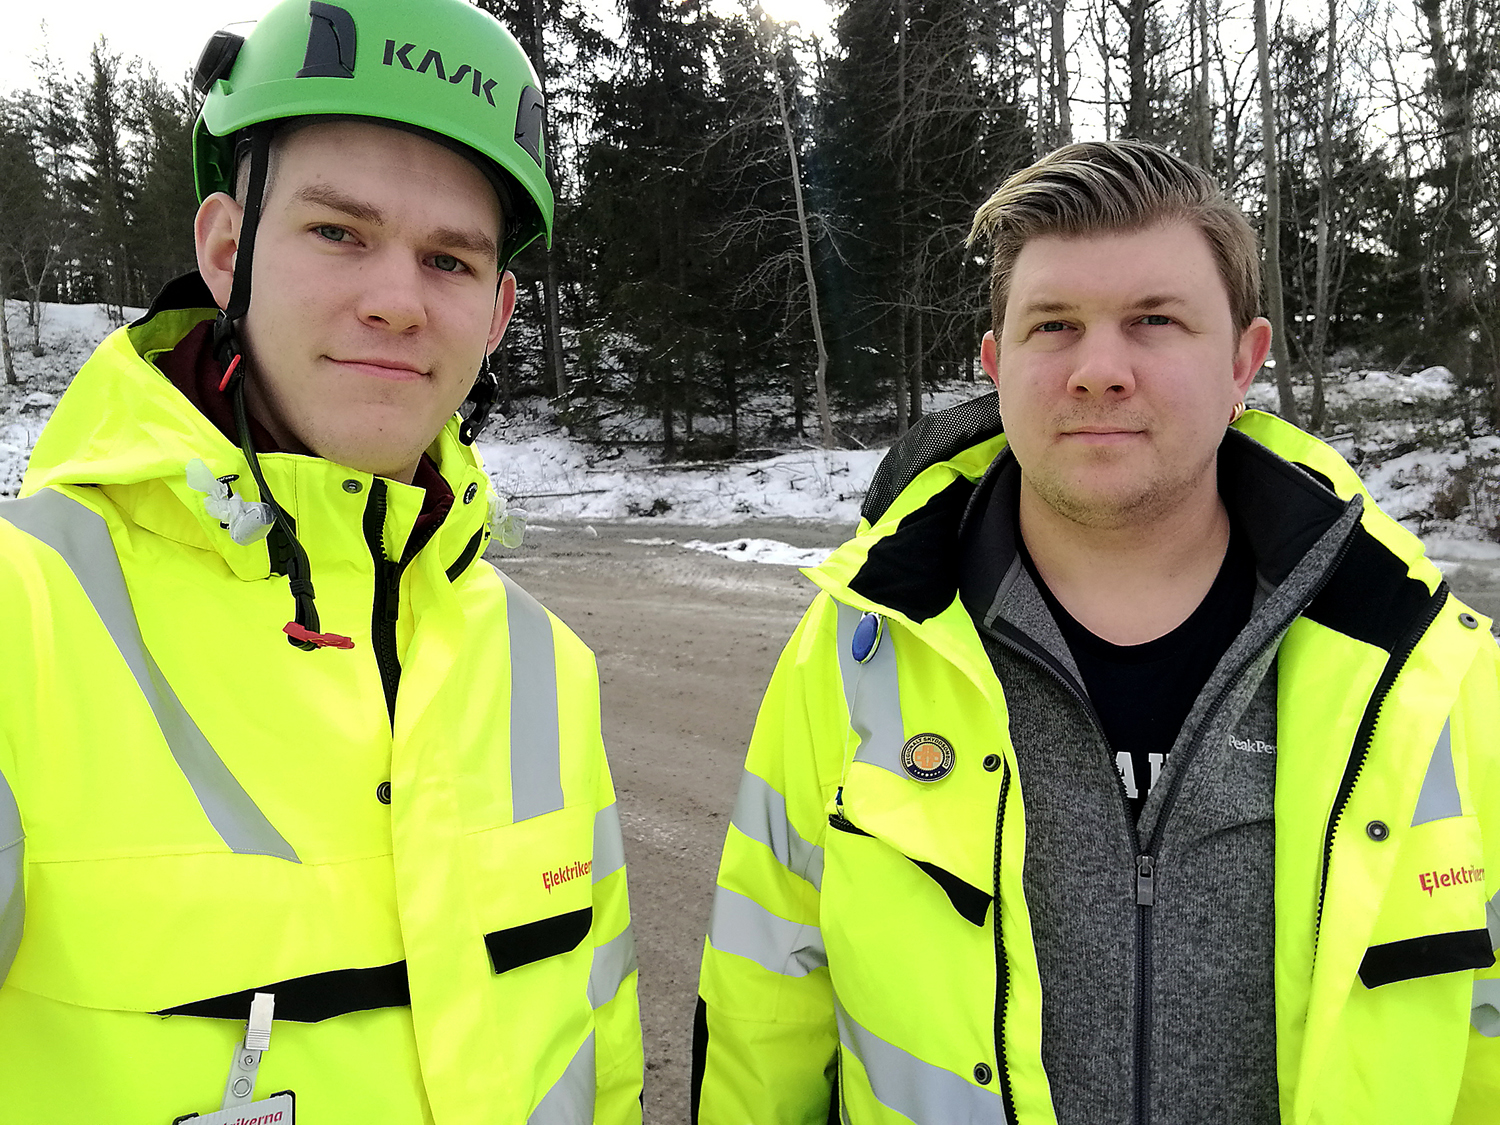 Bilde föreställer Claes Thim och Per Söderlund, med en snöig skog i bakgrunden. Claes har en grön skyddsombudshjälm på sig, och båda är klädda i gula reflexjackor.